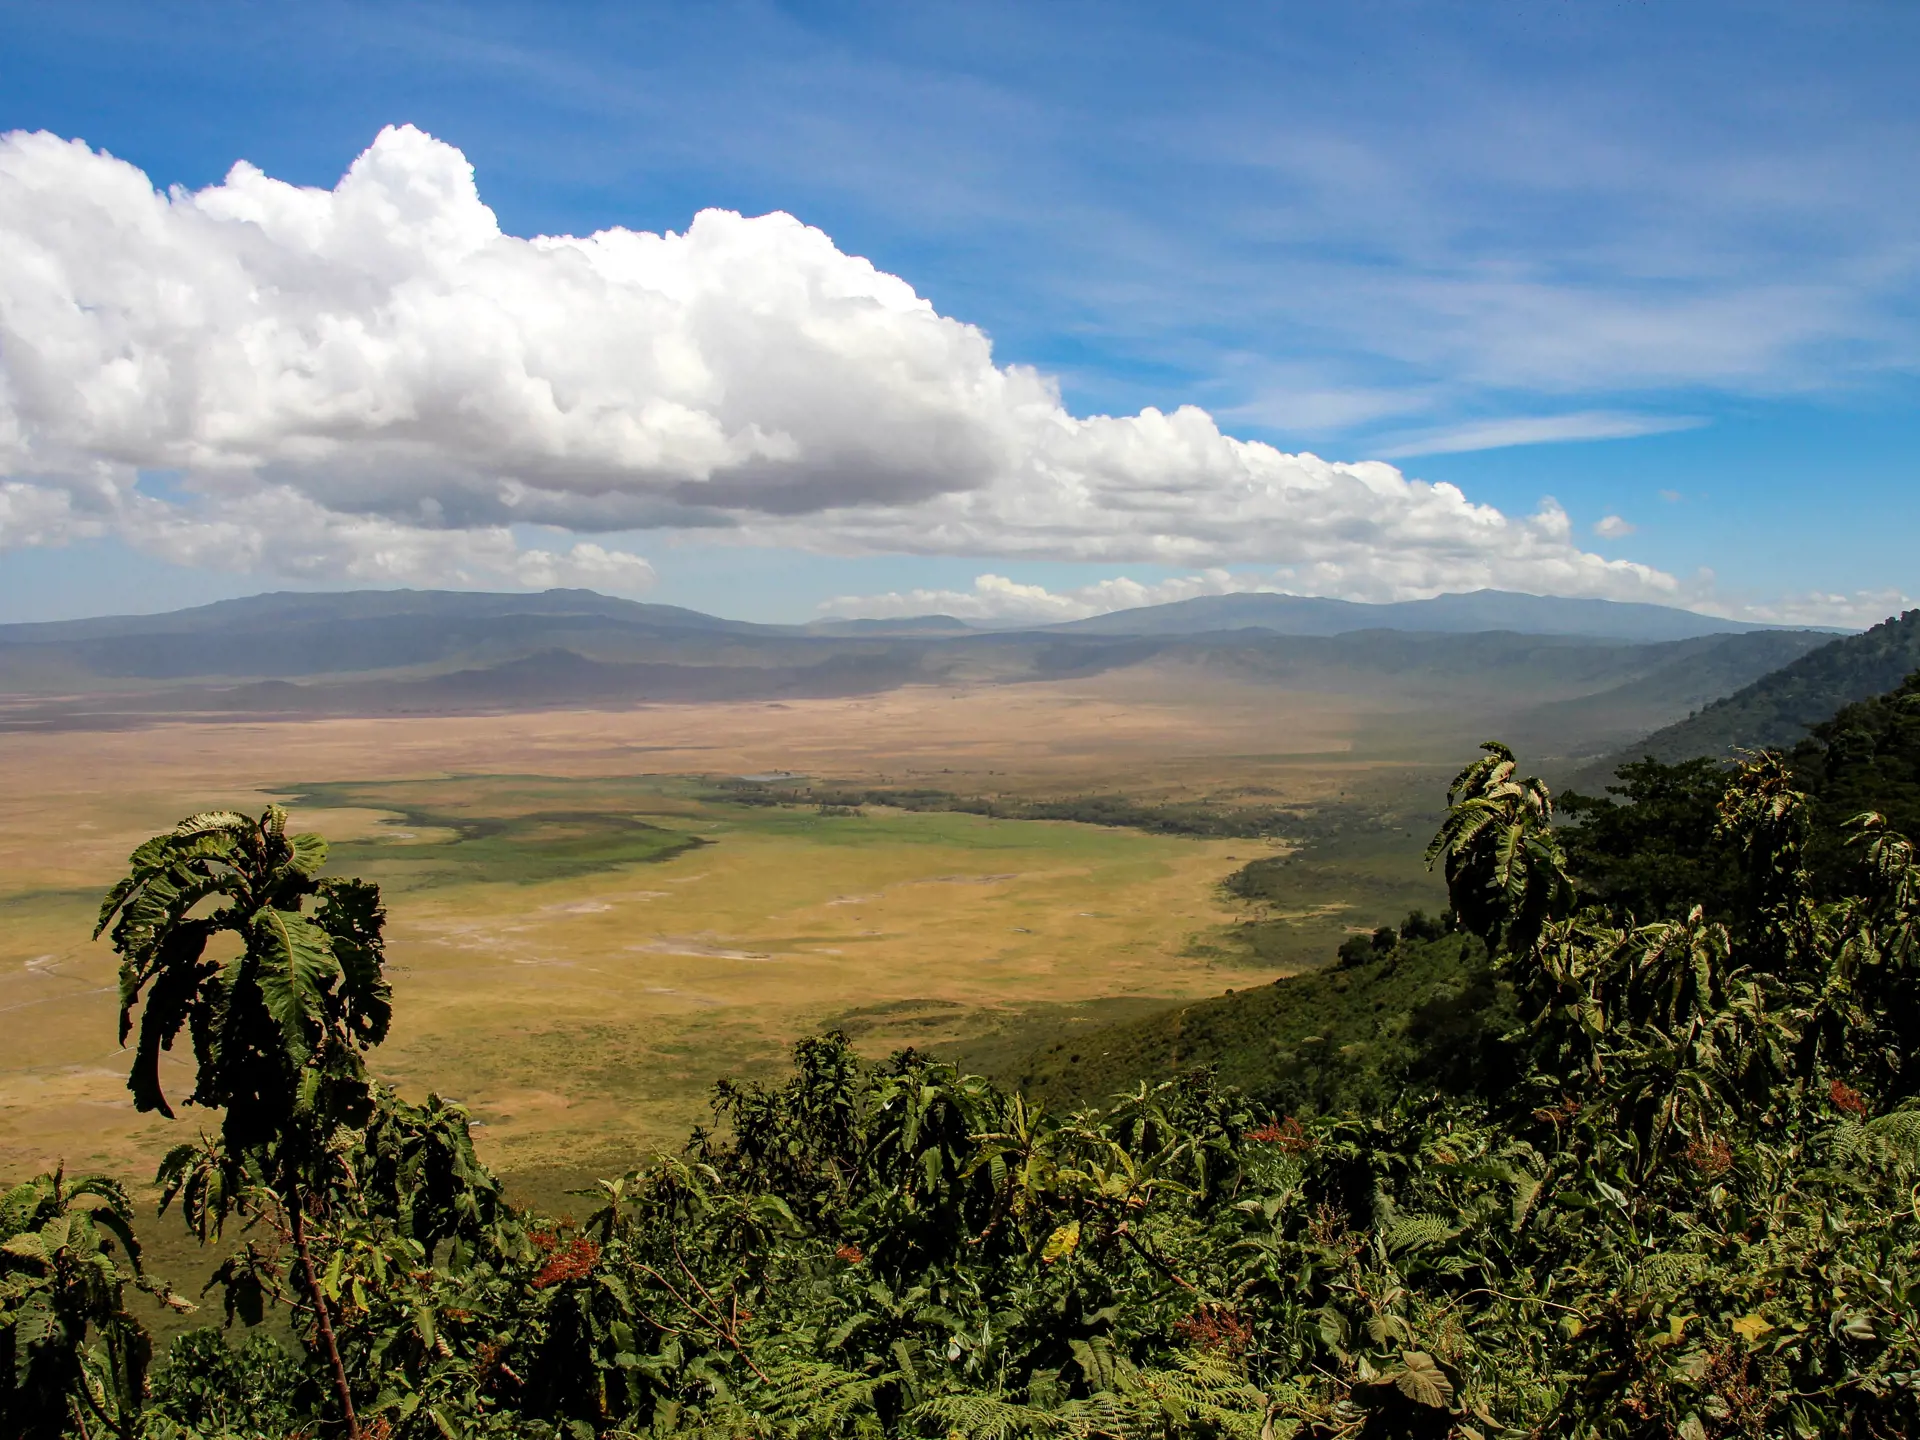 Dyr Ngorongoro16